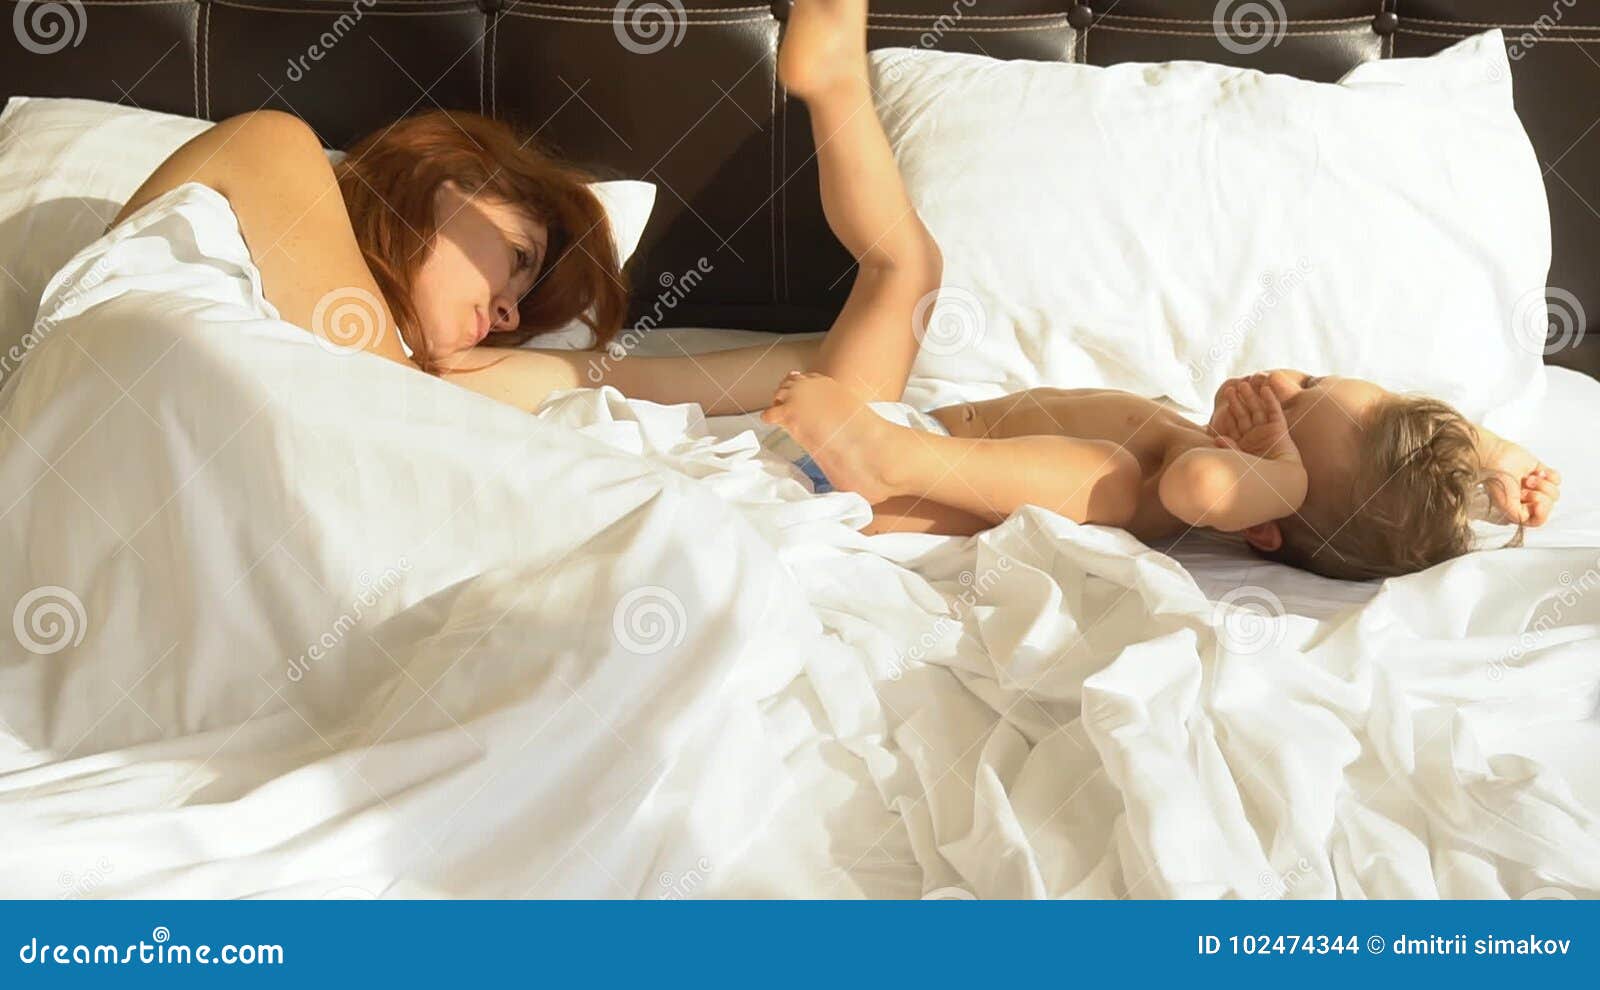 сын увидел мать голой в кровати порно фото 55